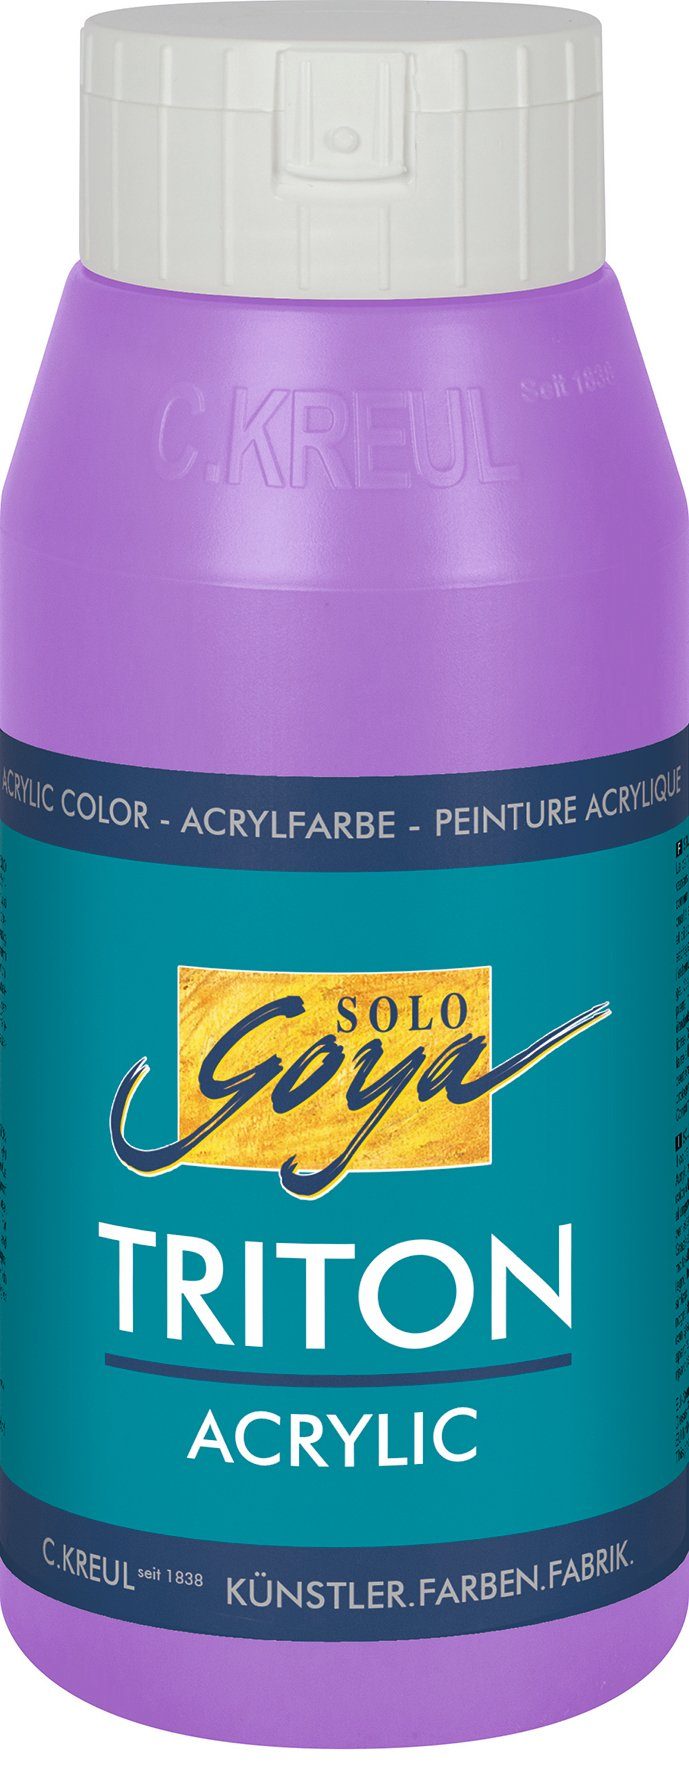 Kreul Acrylfarbe Solo Goya Triton Acrylic, 750 ml Flieder